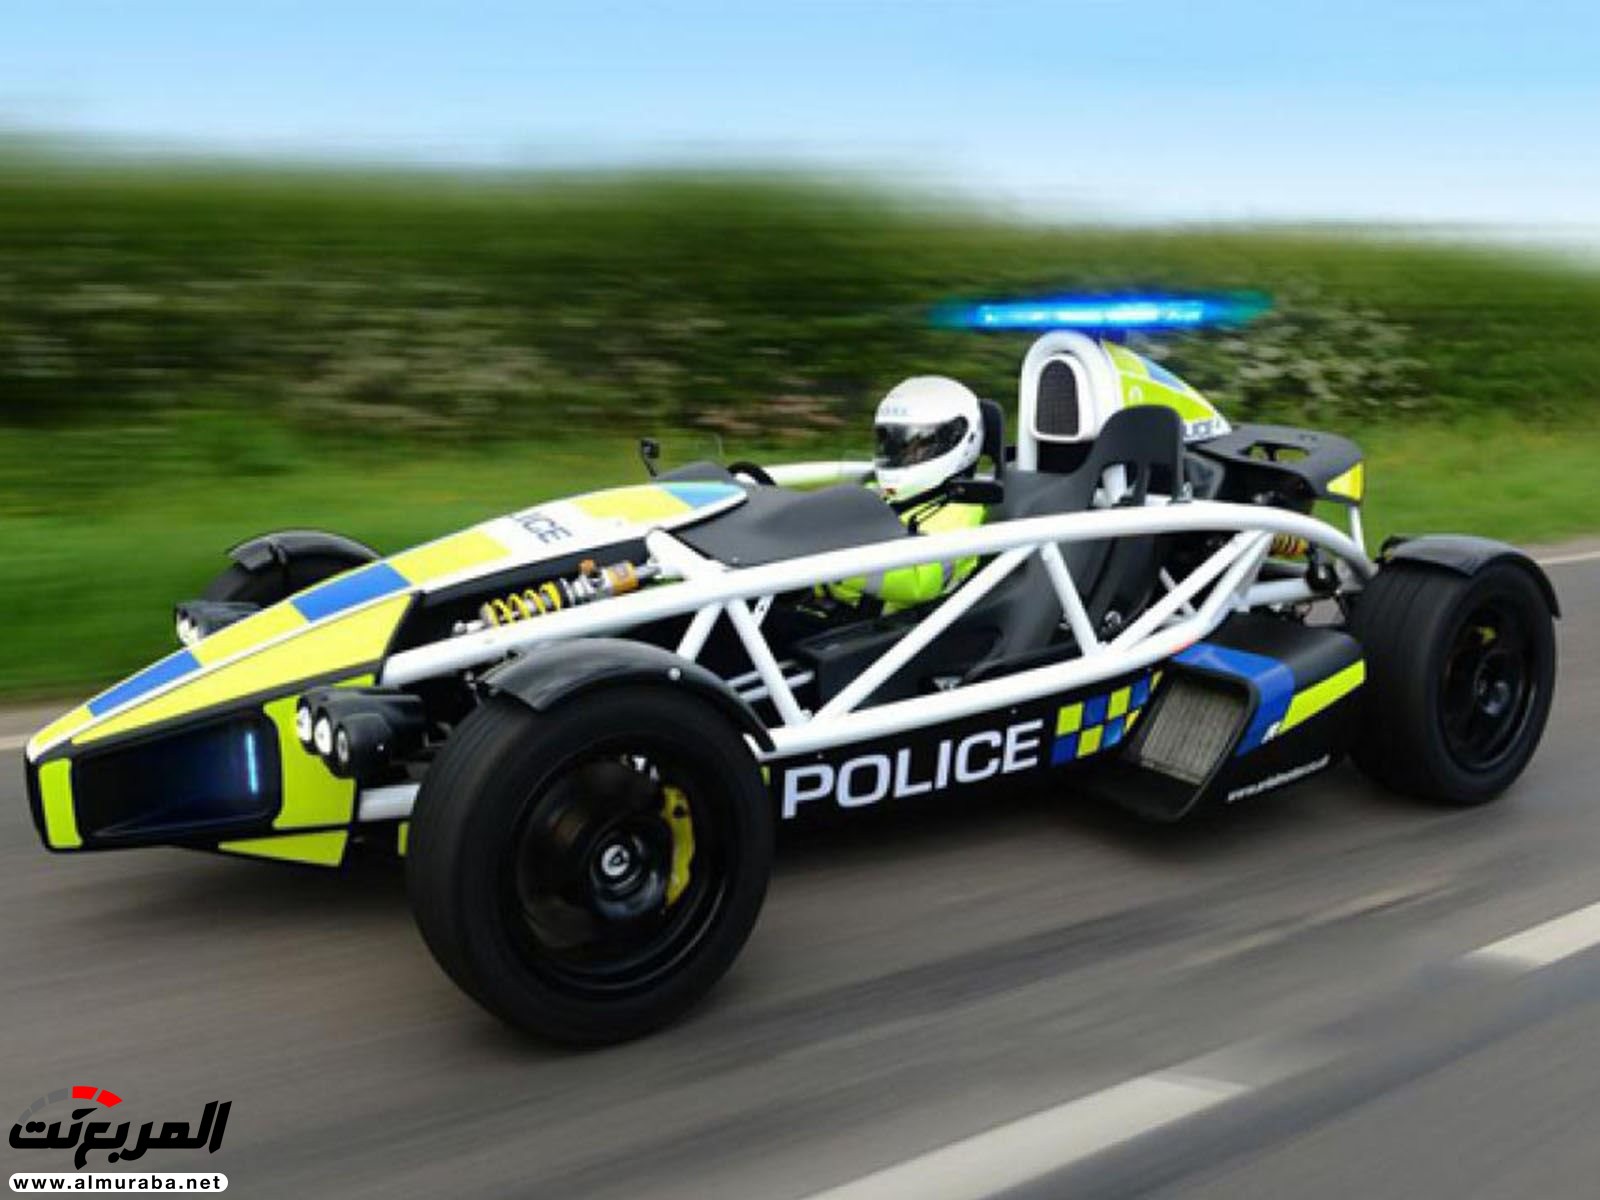 رئيس الشرطة البريطانية: تعدي السرعة القانونية بقدر 1 ميل نريد احتسابها "جريمة" 2